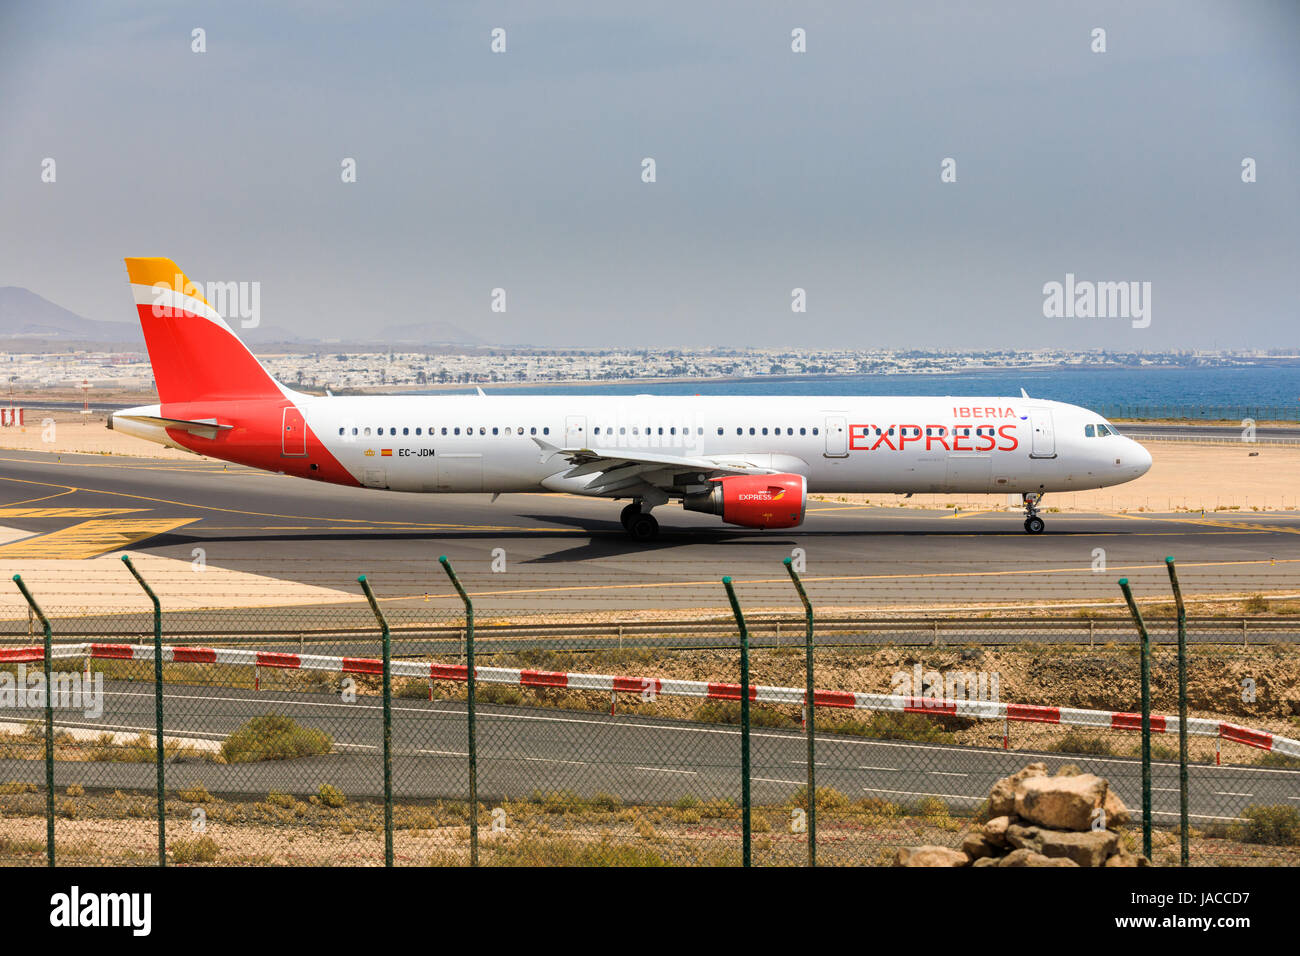 ARECIFE, Spanien - 16. April 2017: AirBus A321 der iberischen Halbinsel mit der Registrierung EG-JDM bereit abzunehmen am Flughafen Lanzarote Stockfoto